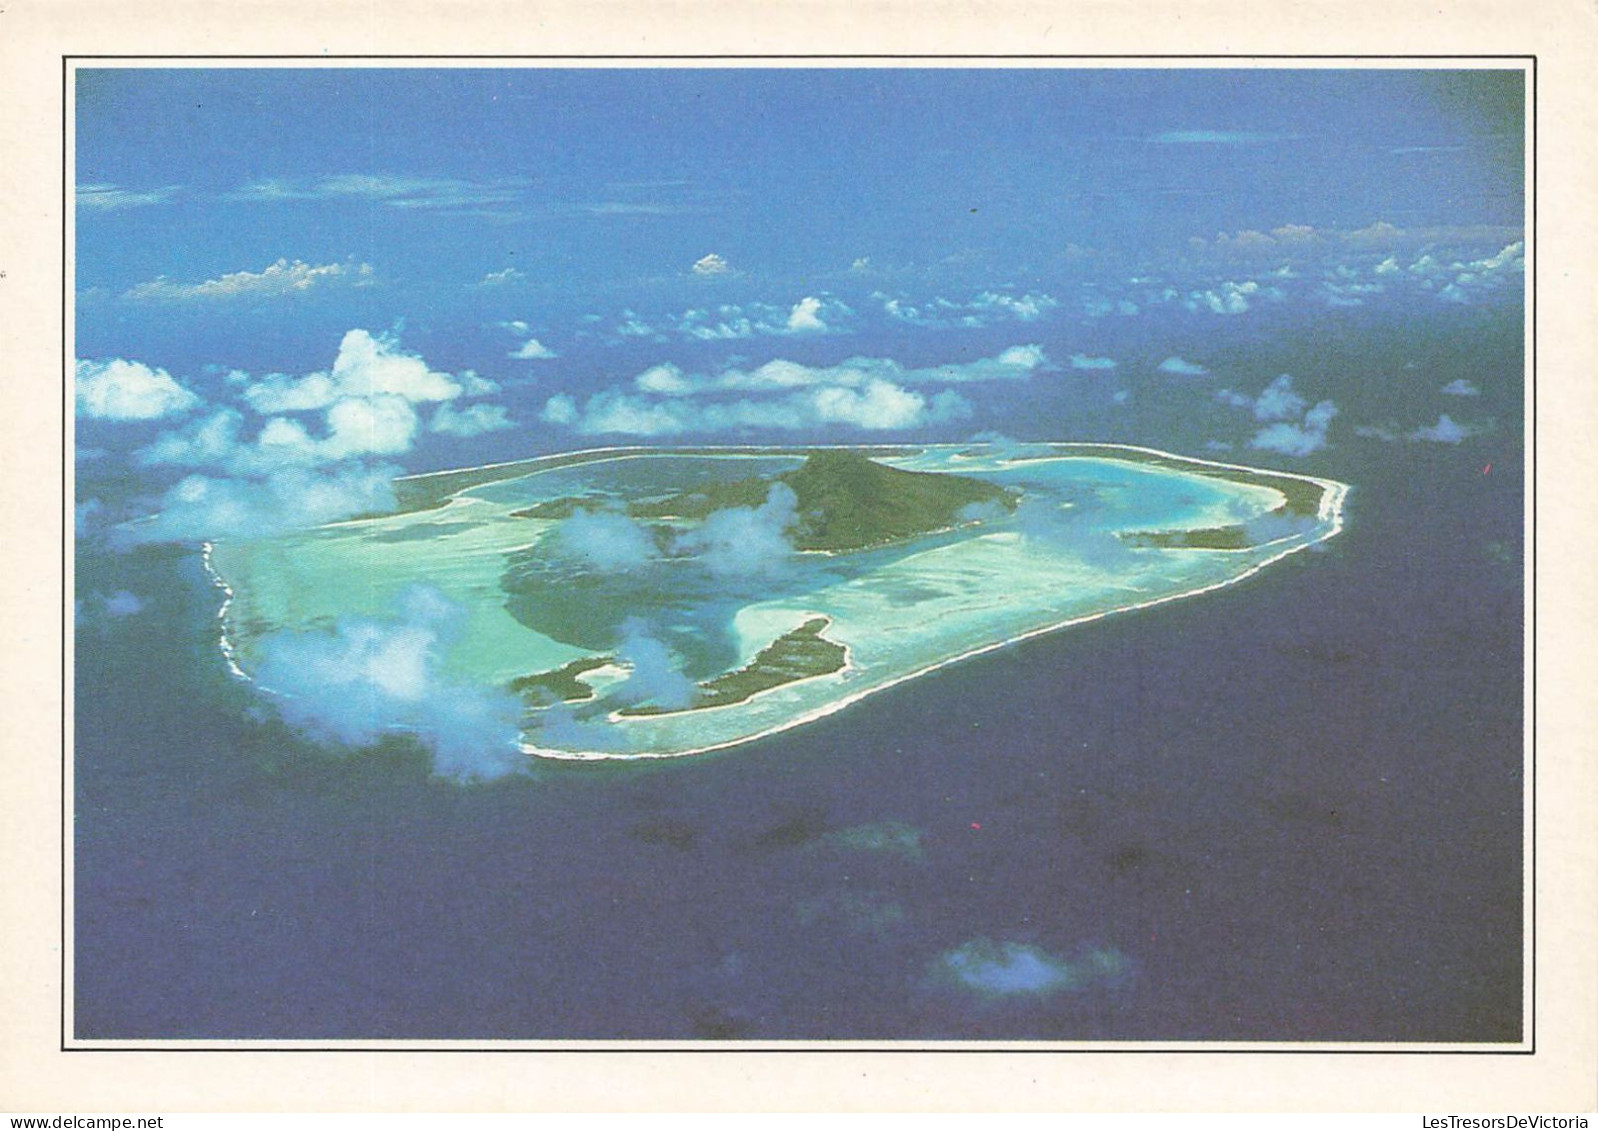 POLYNESIE FRANCAISE - Maupiti - L'île Vue Du Ciel - Colorisé - Carte Postale - Französisch-Polynesien